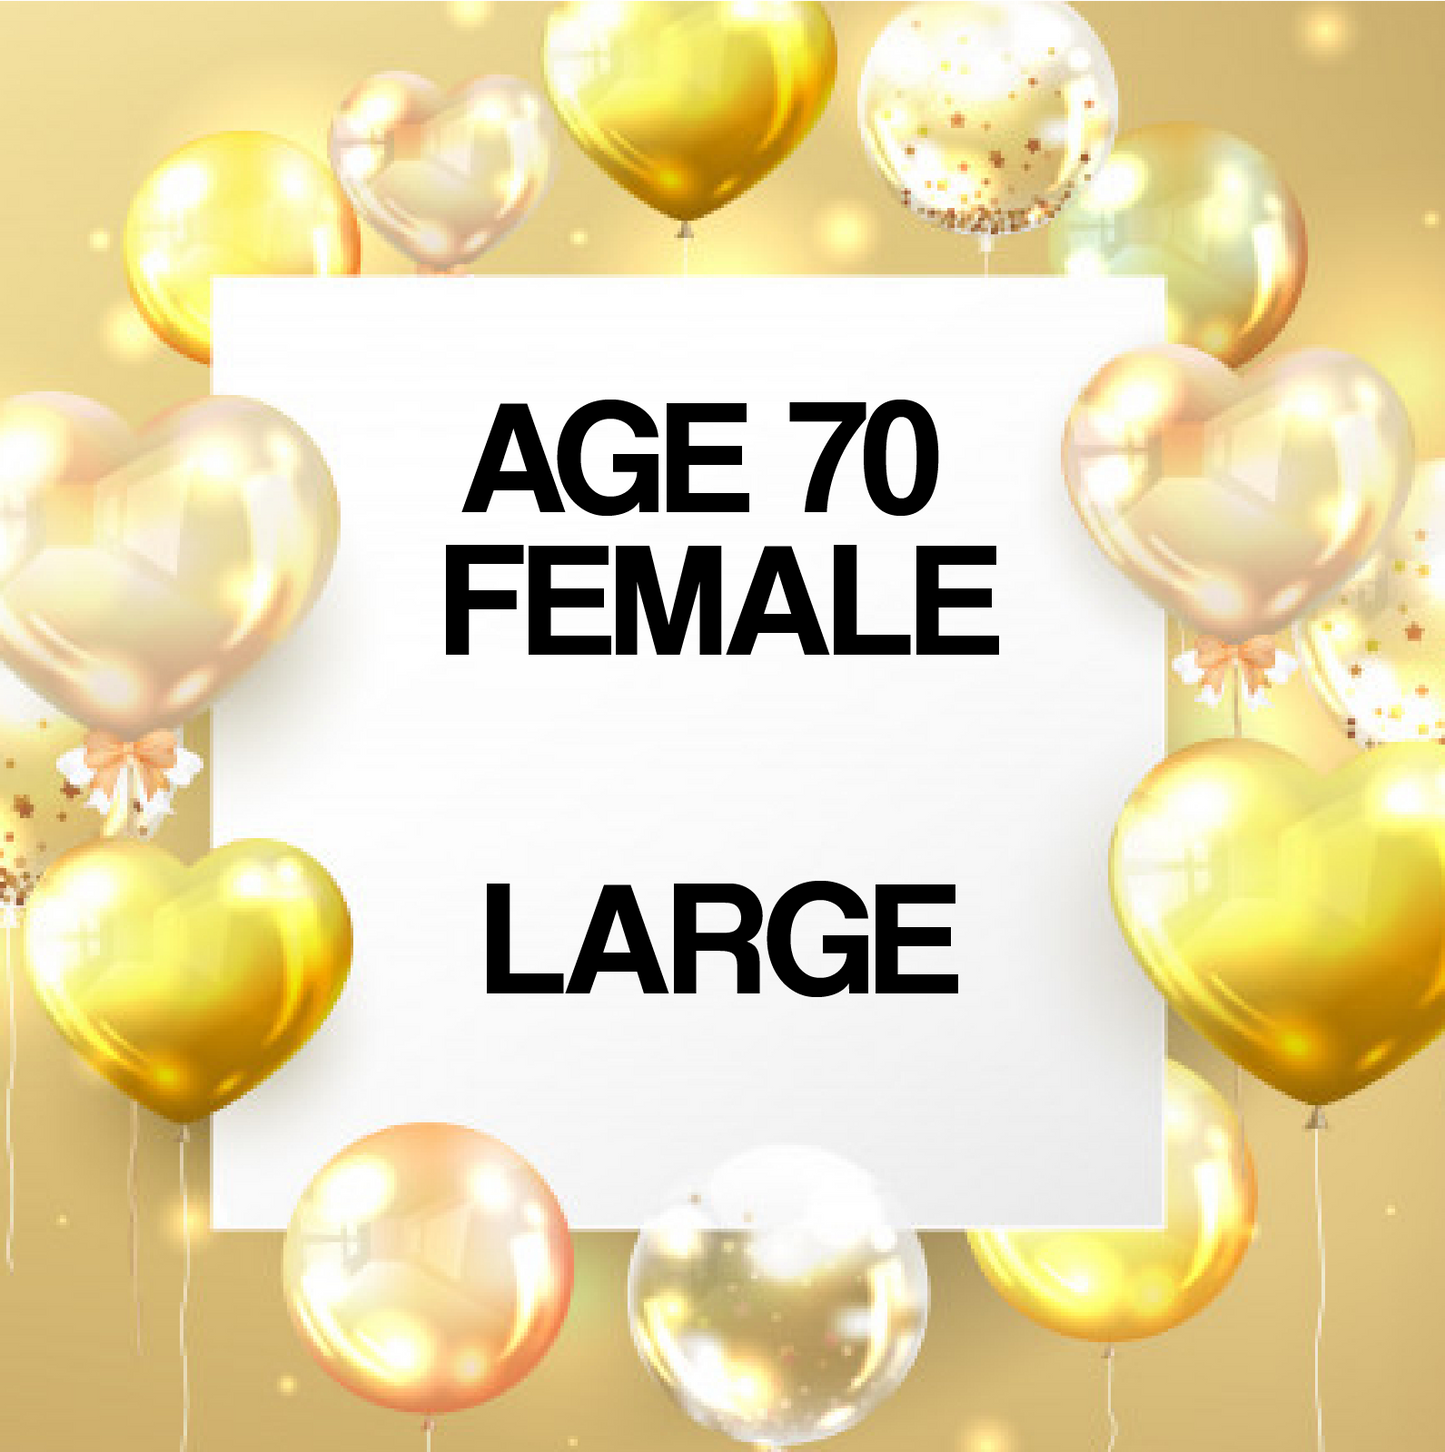 Age 70 Male